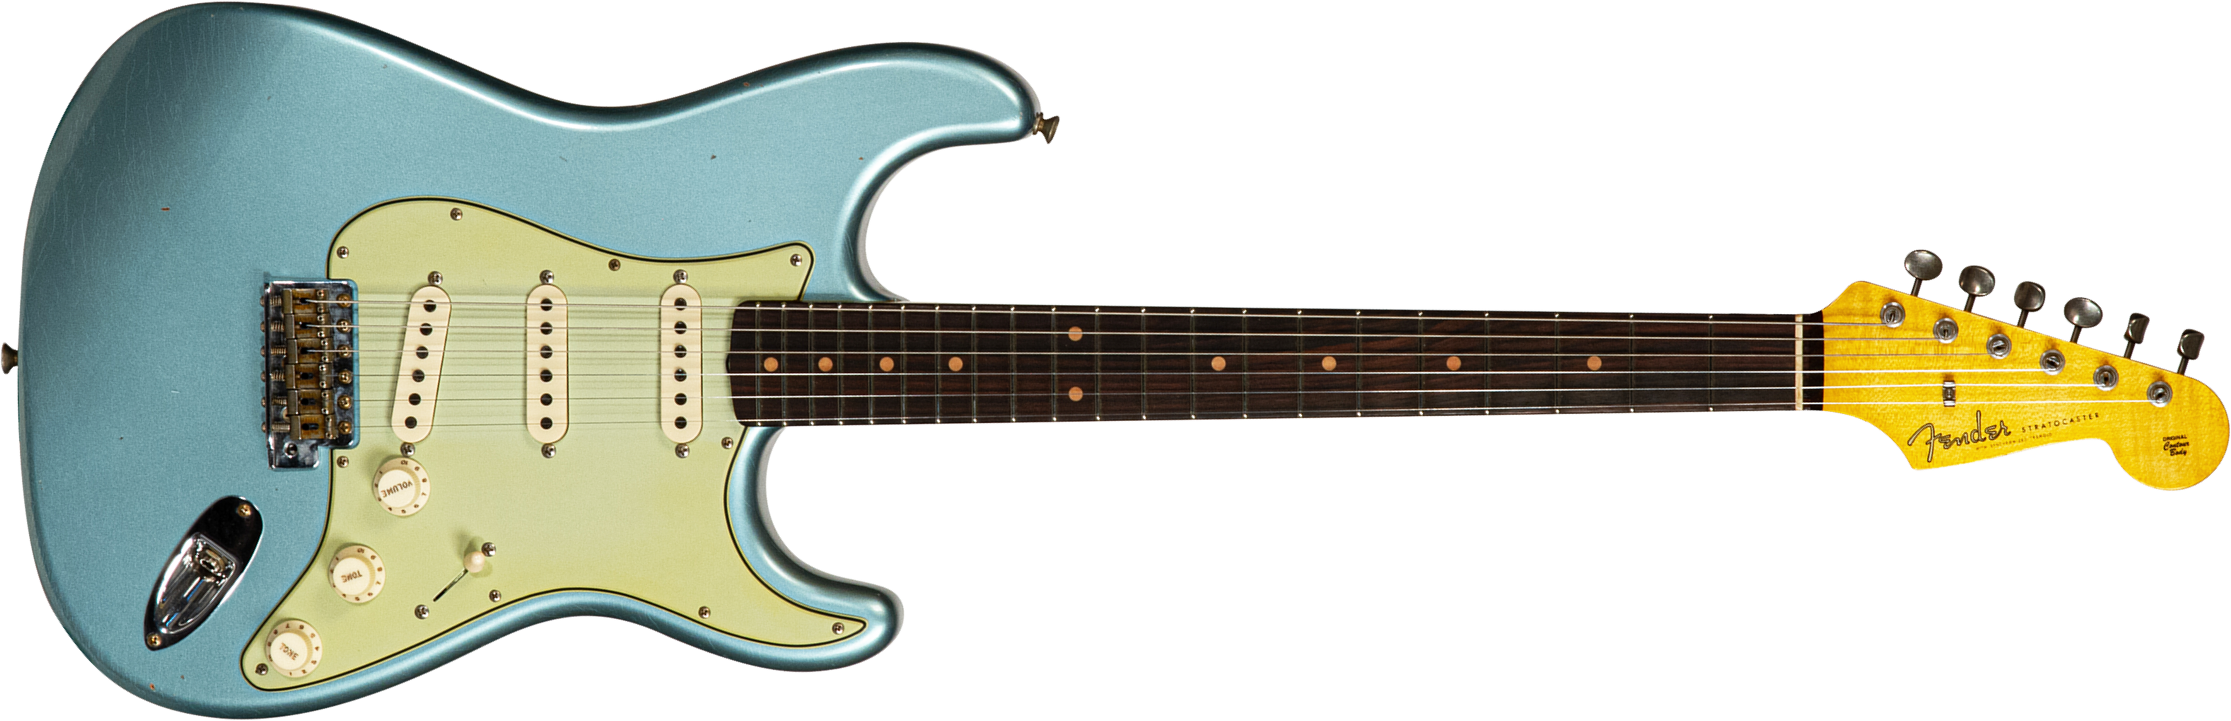 Fender Custom Shop Strat 1959 3s Trem Rw #cz566857 - Journeyman Relic Teal Green Metallic - Guitare Électrique Forme Str - Main picture